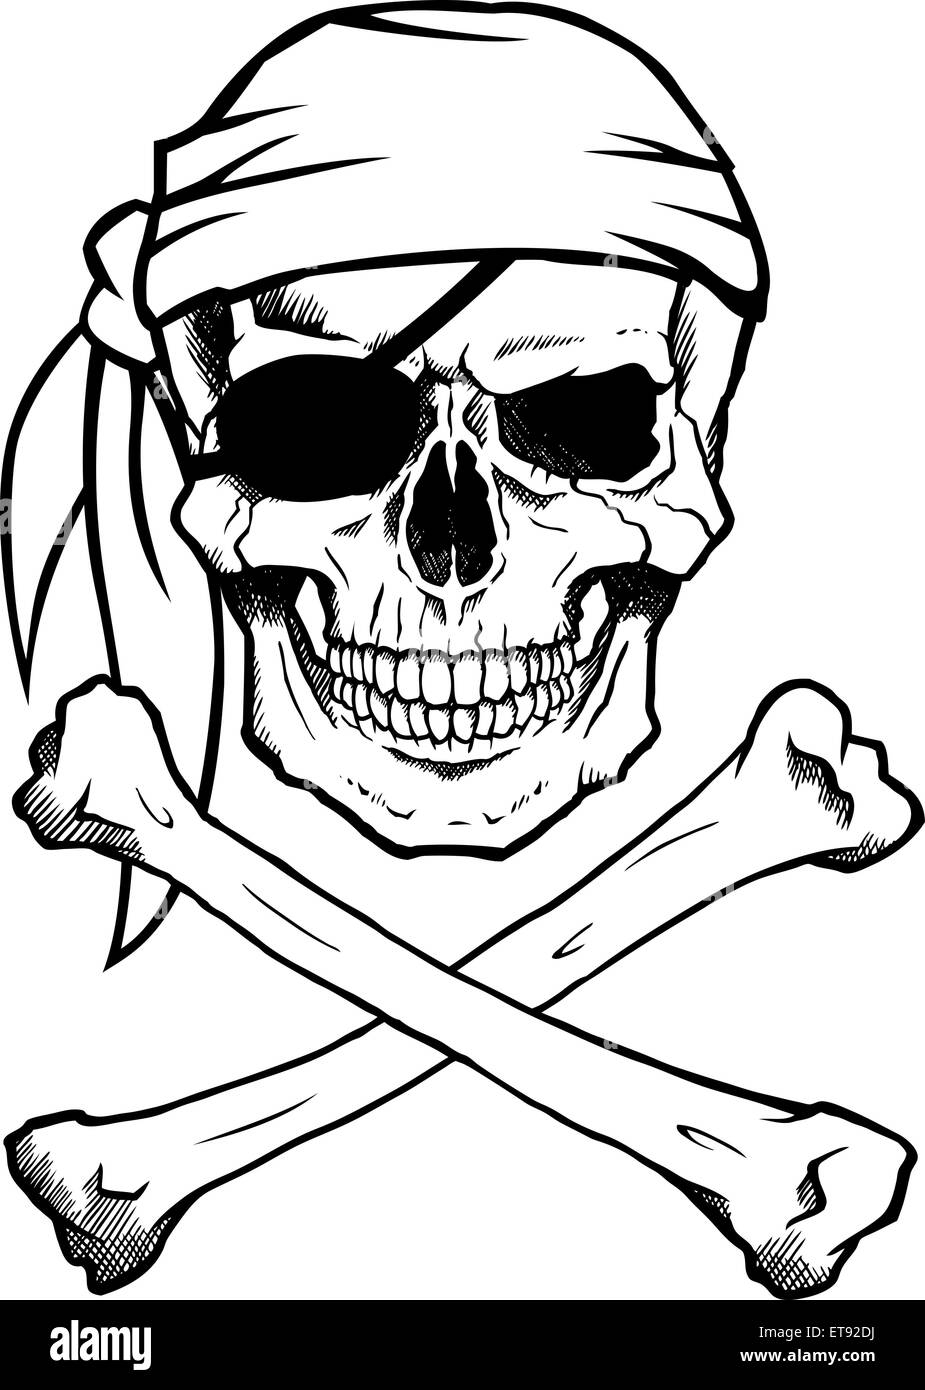 43 cm haotong11 Calavera y Huesos calcomanías de Pared símbolo Pirata Etiqueta de la Pared para Bar Jolly Roger Art Mural decoración del hogar decoración de la Pared 42 